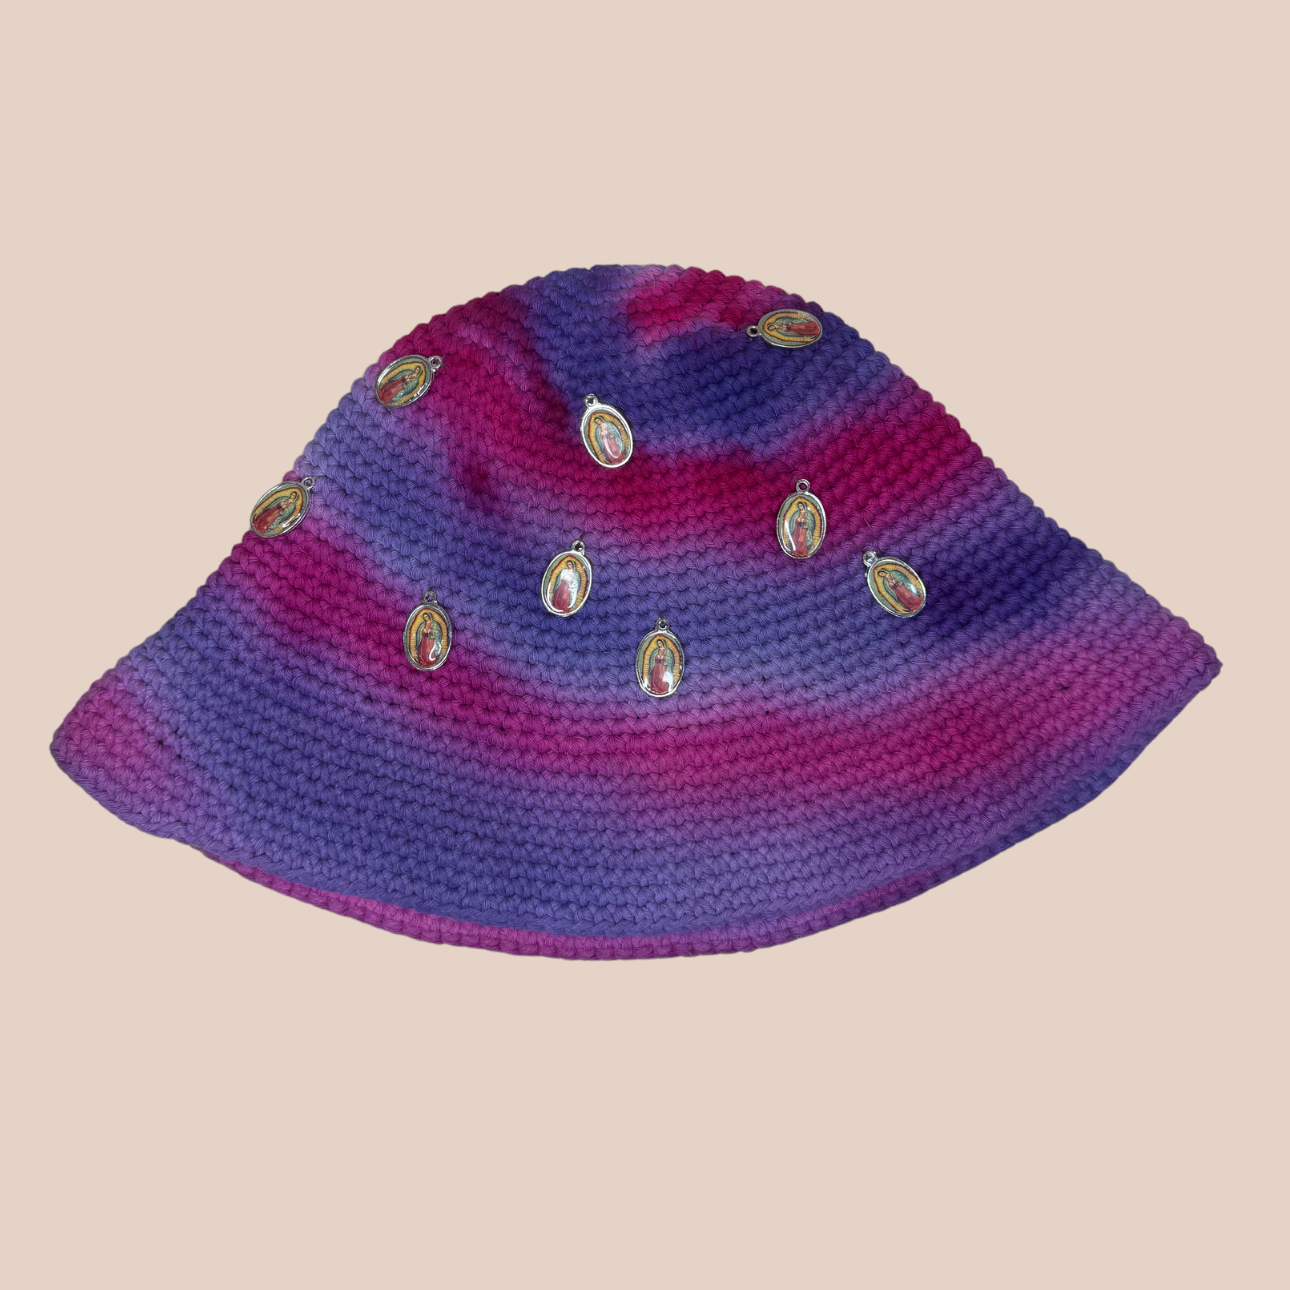 Image du bucket hat KANIL DE Maison Badigo, un bucket hat (bob) coloré, fabriqué en laine et acrylique crochetés avec médaillon maria cousus main